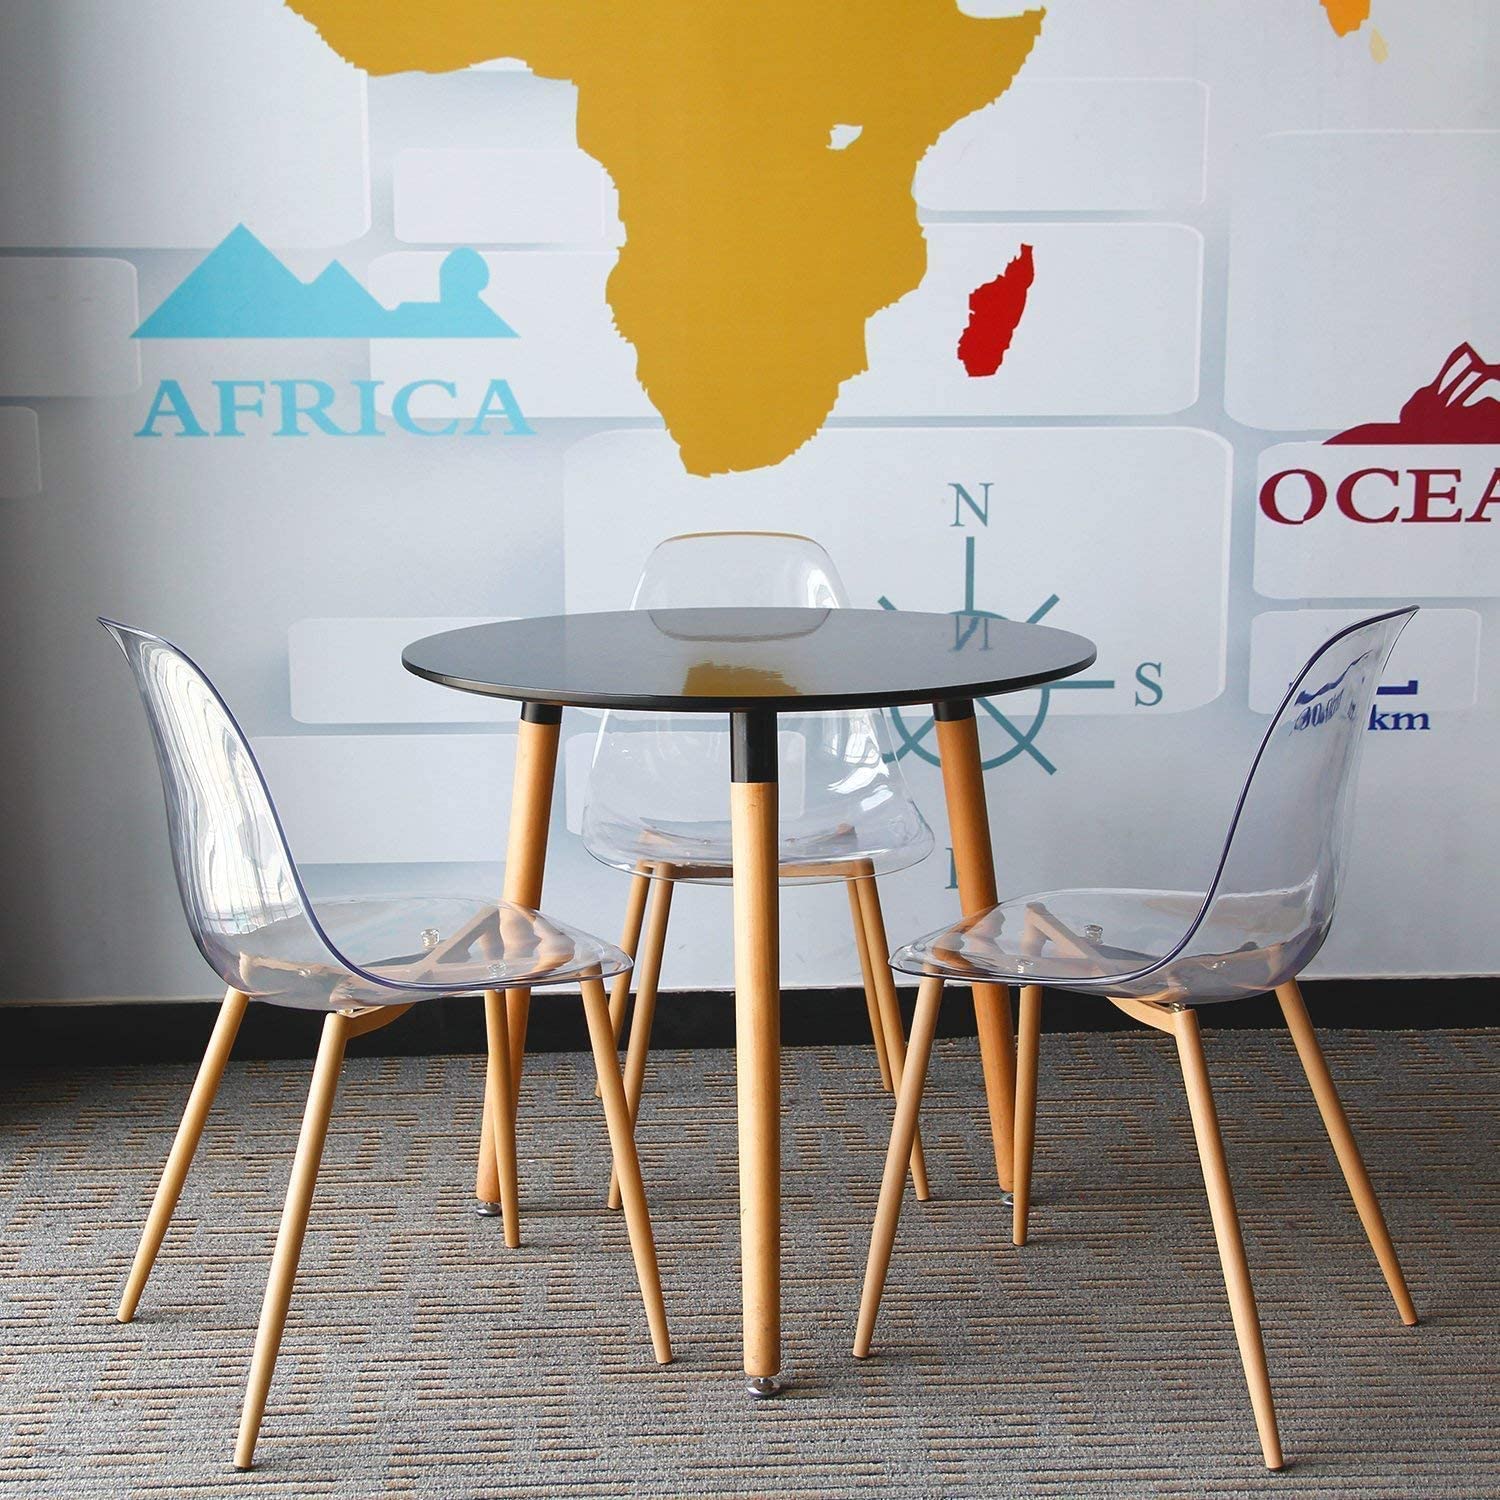 Nếu muốn tạo nên điểm nhấn cá tính cho món đồ của mình, bạn cũng có thể tham khảo những mẫu bàn ghế kết hợp giữa nhựa acrylic với vật liệu gỗ tự nhiên sáng màu thay vì lựa chọn kiểu thiết kế hoàn toàn trong suốt như 3 ví dụ trước đó.